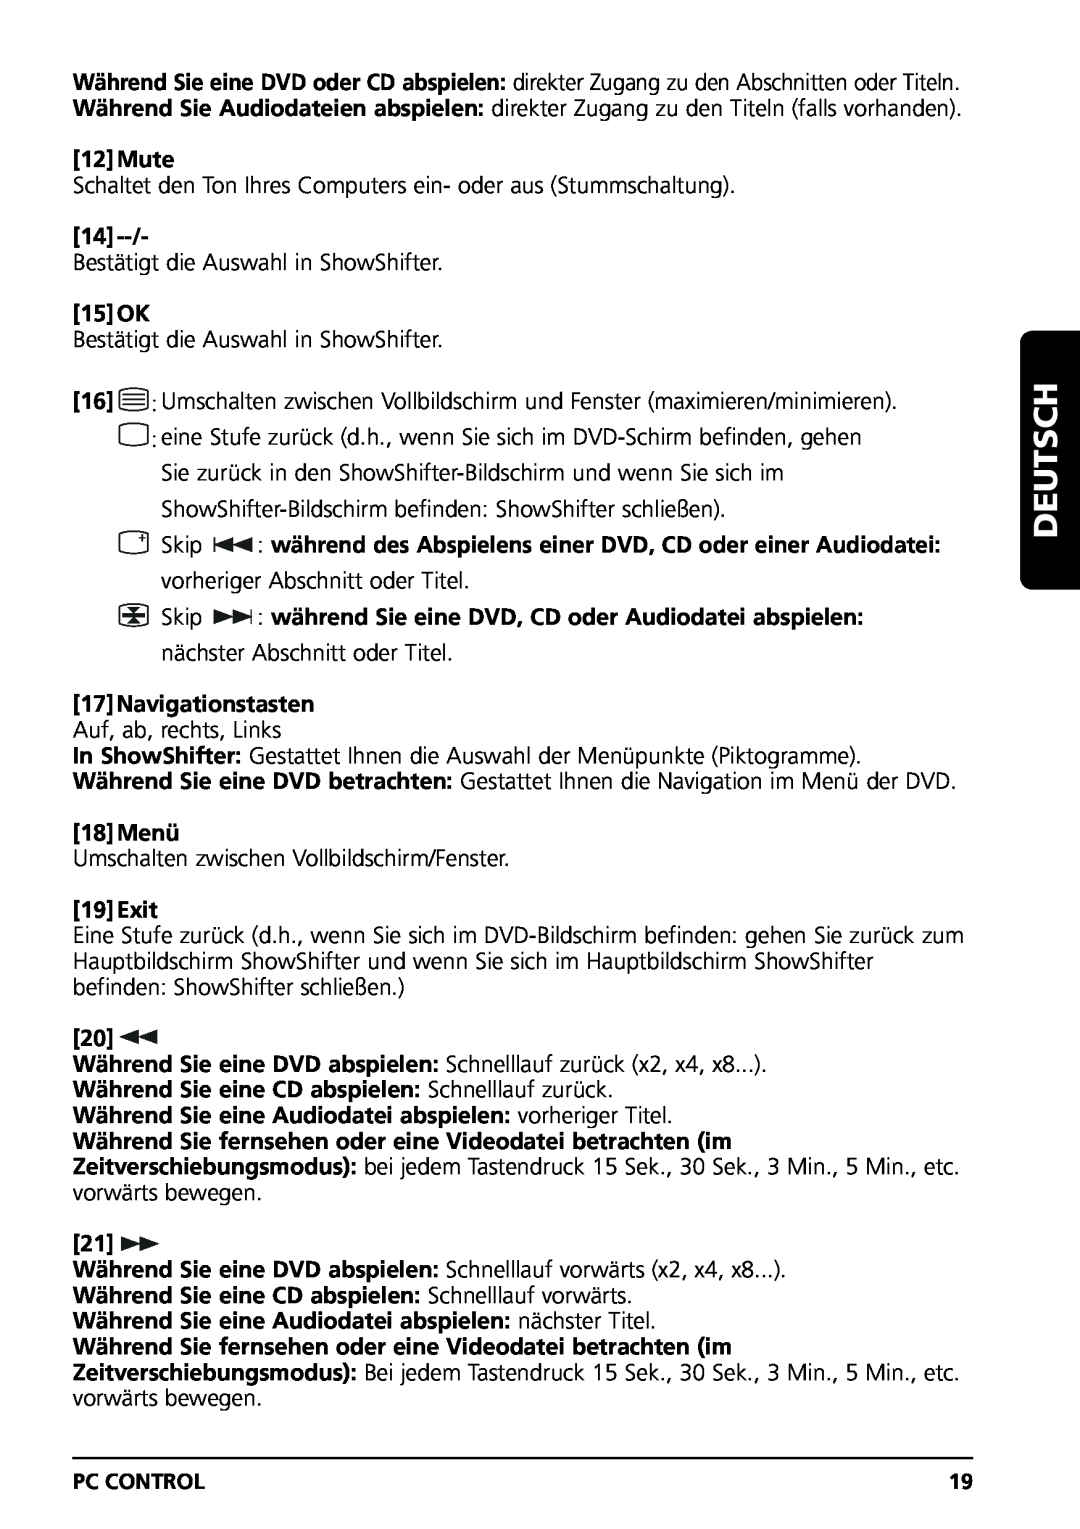 Marmitek PC CONTROL owner manual 15OK, 17Navigationstasten Auf, ab, rechts, Links, 18Menü, Deutsch, 12Mute, 19Exit 